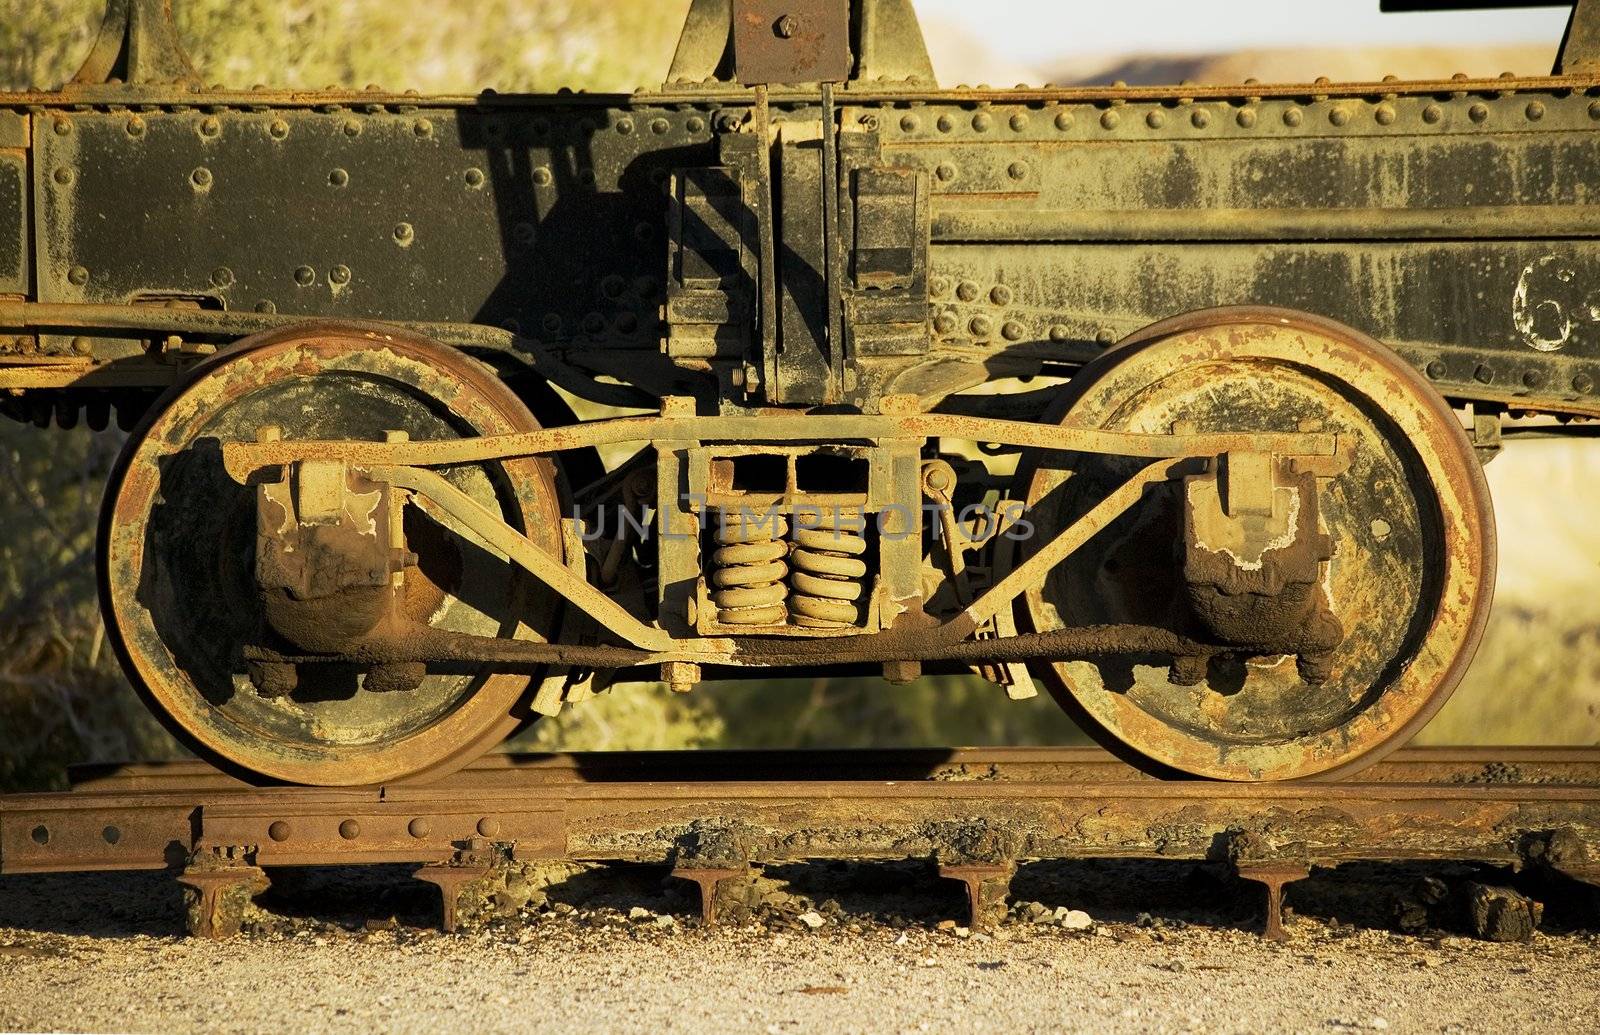 Antique train wheels by Creatista